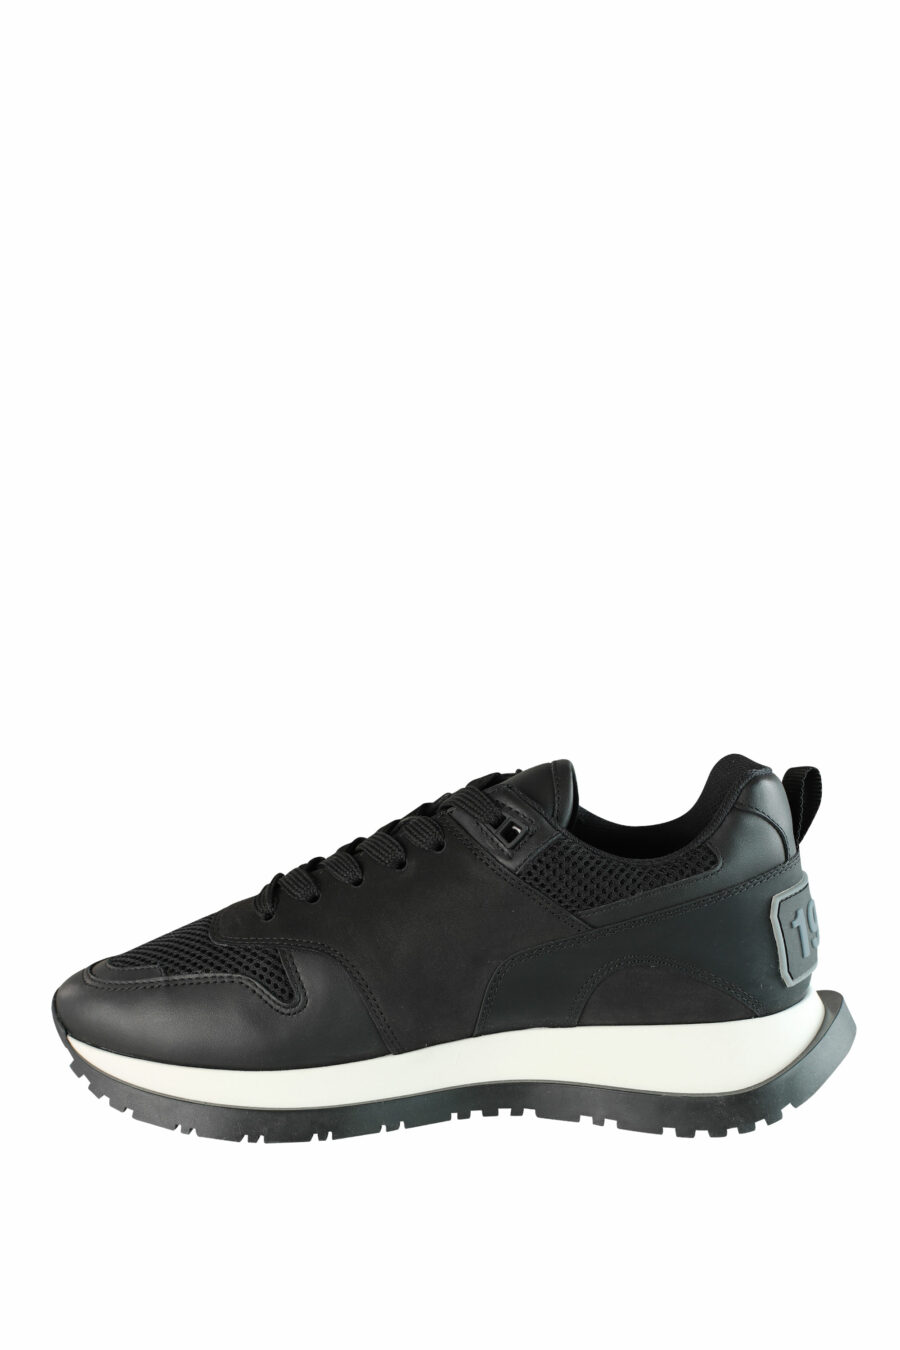 Chaussures de course noires avec semelle blanche et logo noir - IMG 1432